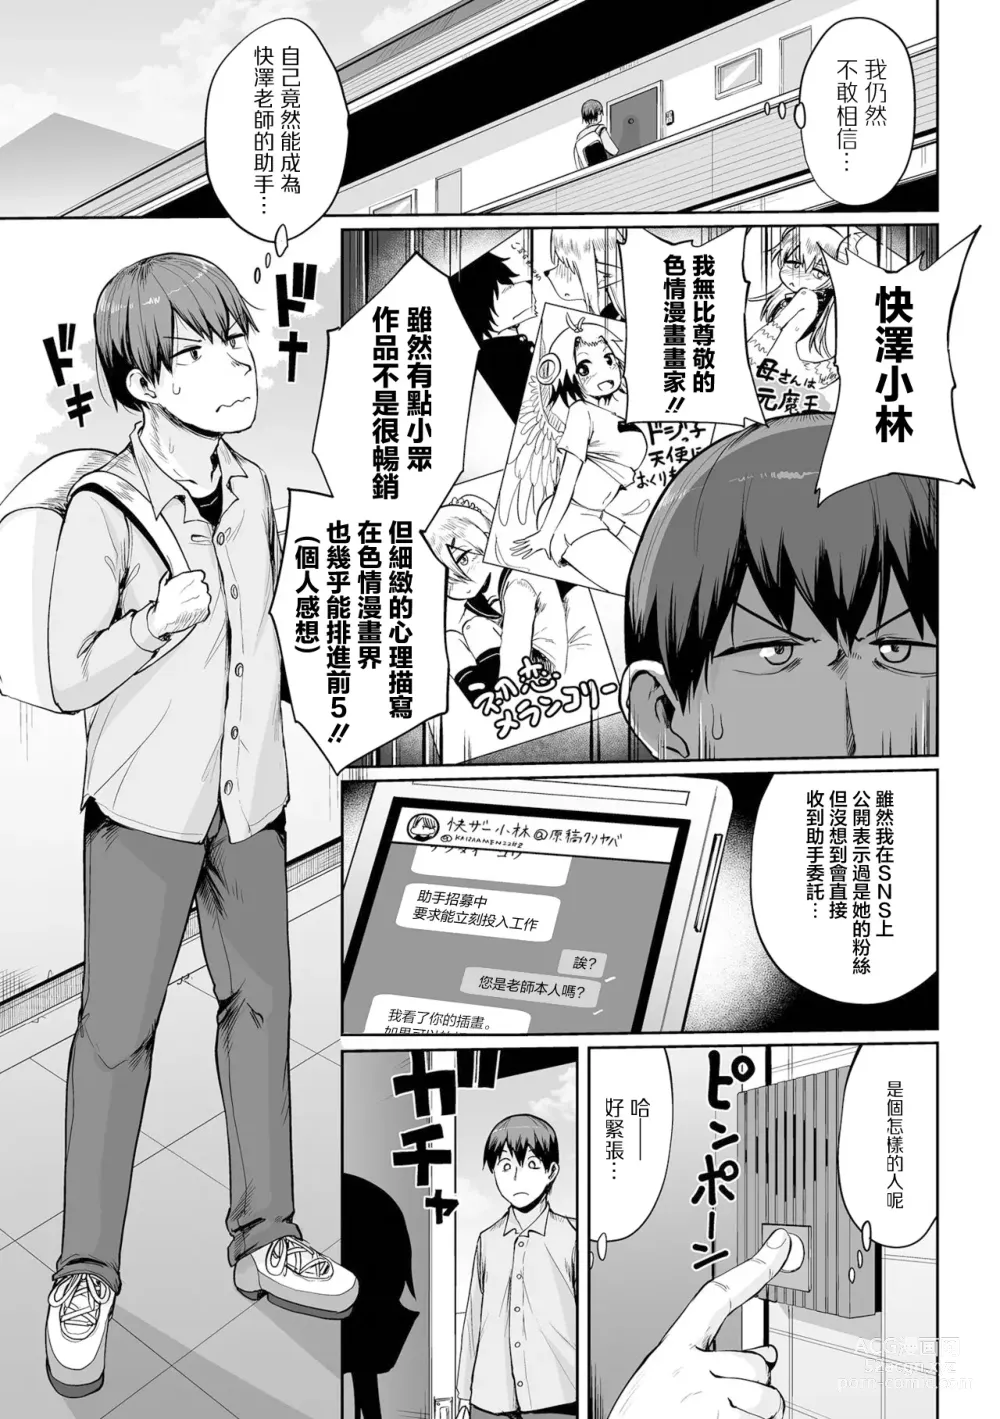 Page 5 of manga 其實漫畫家只能畫出經曆過的事